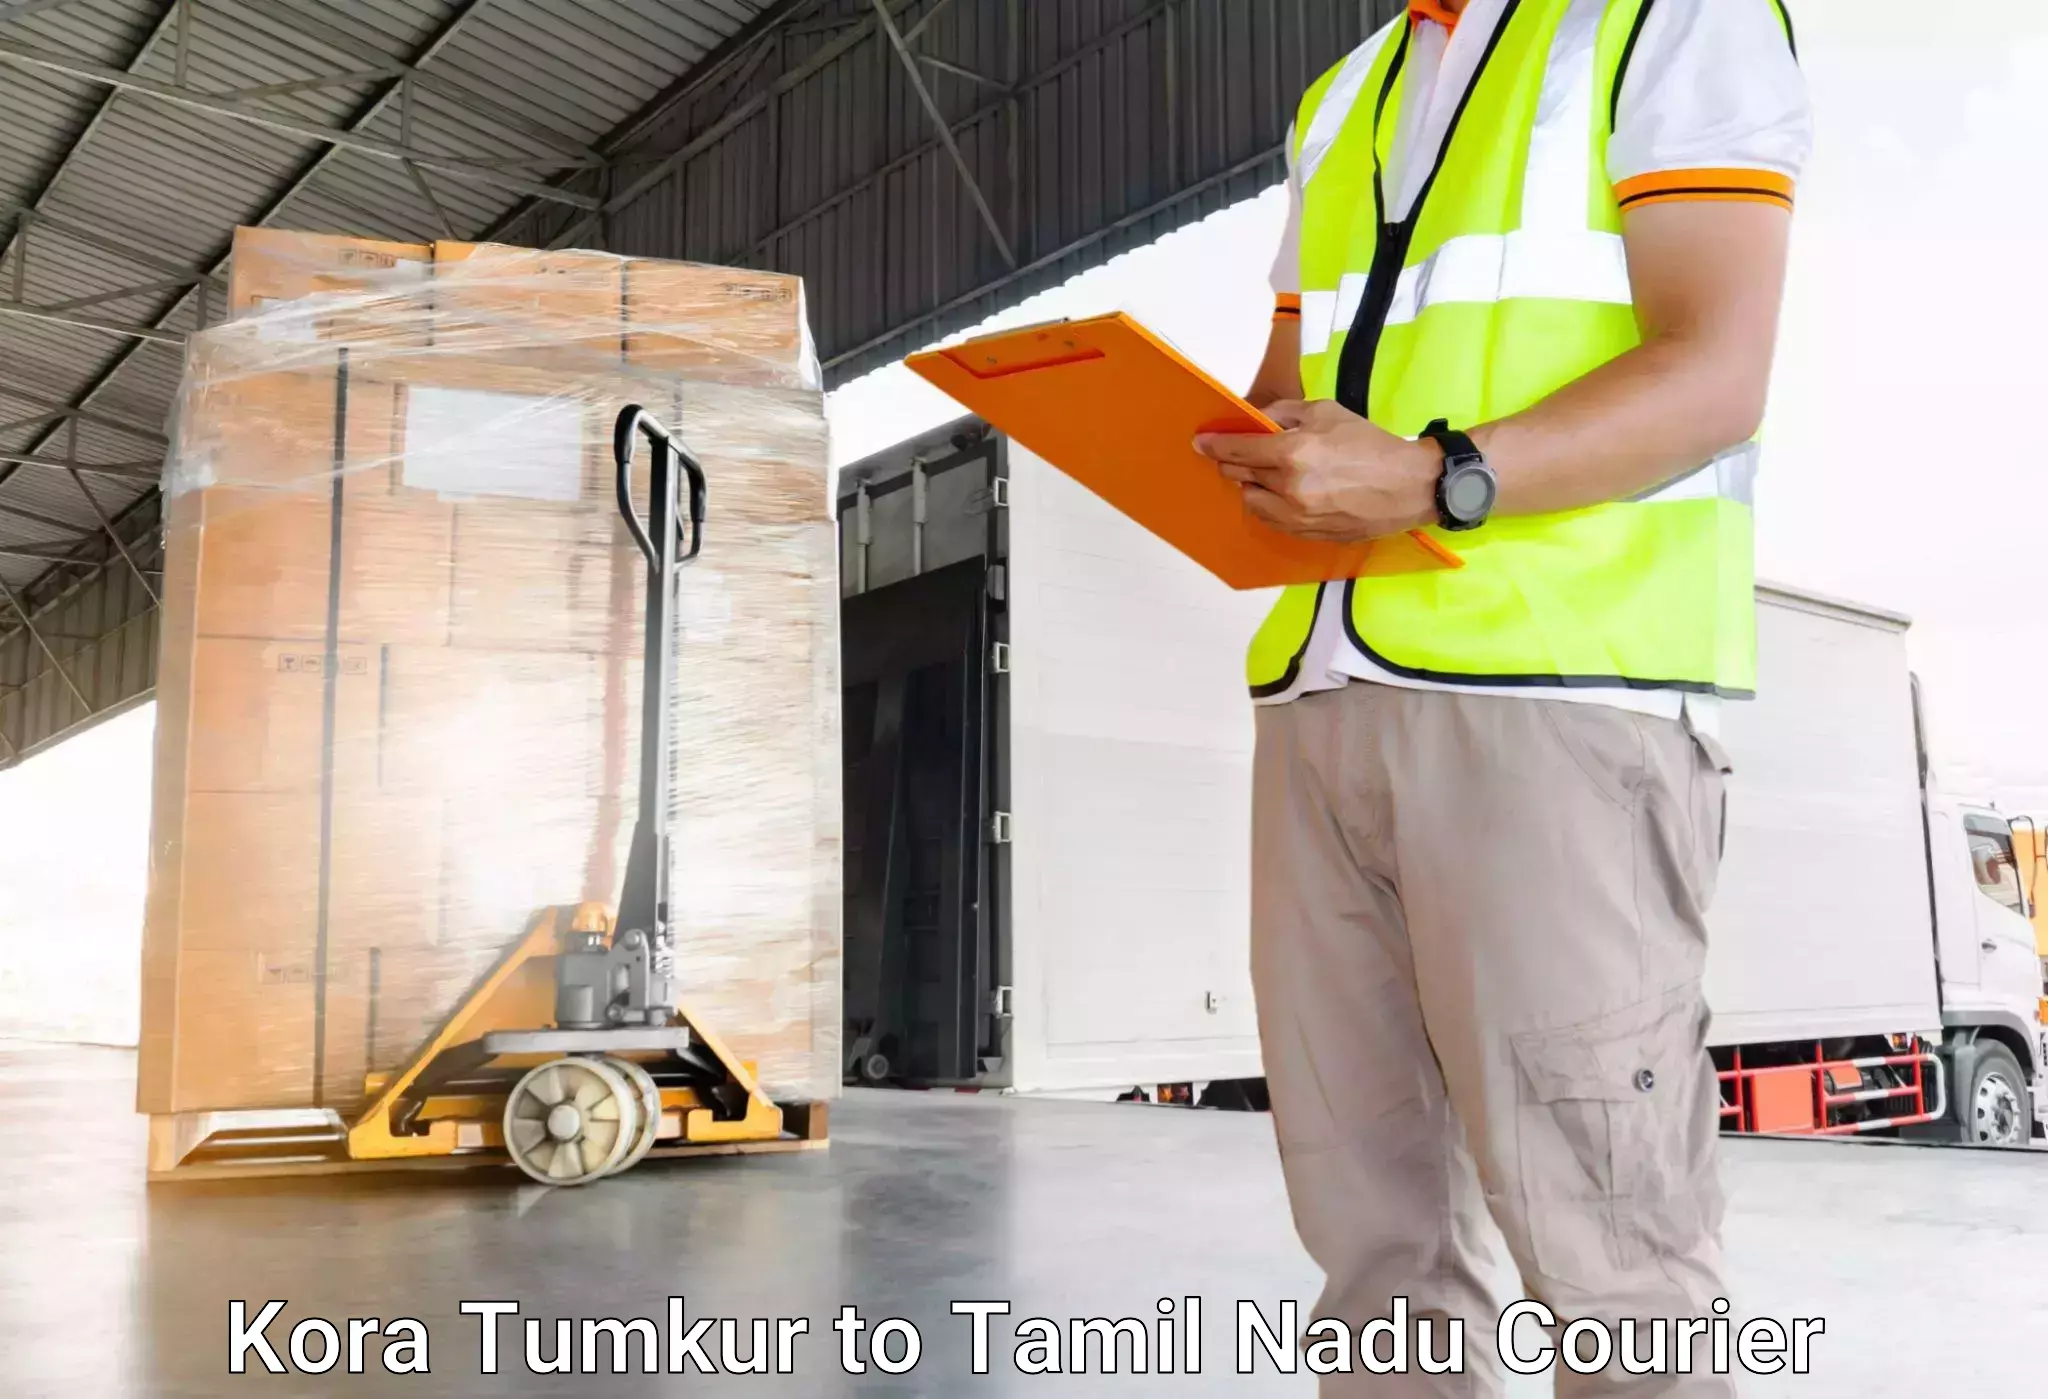 Baggage transport technology Kora Tumkur to Virudhunagar